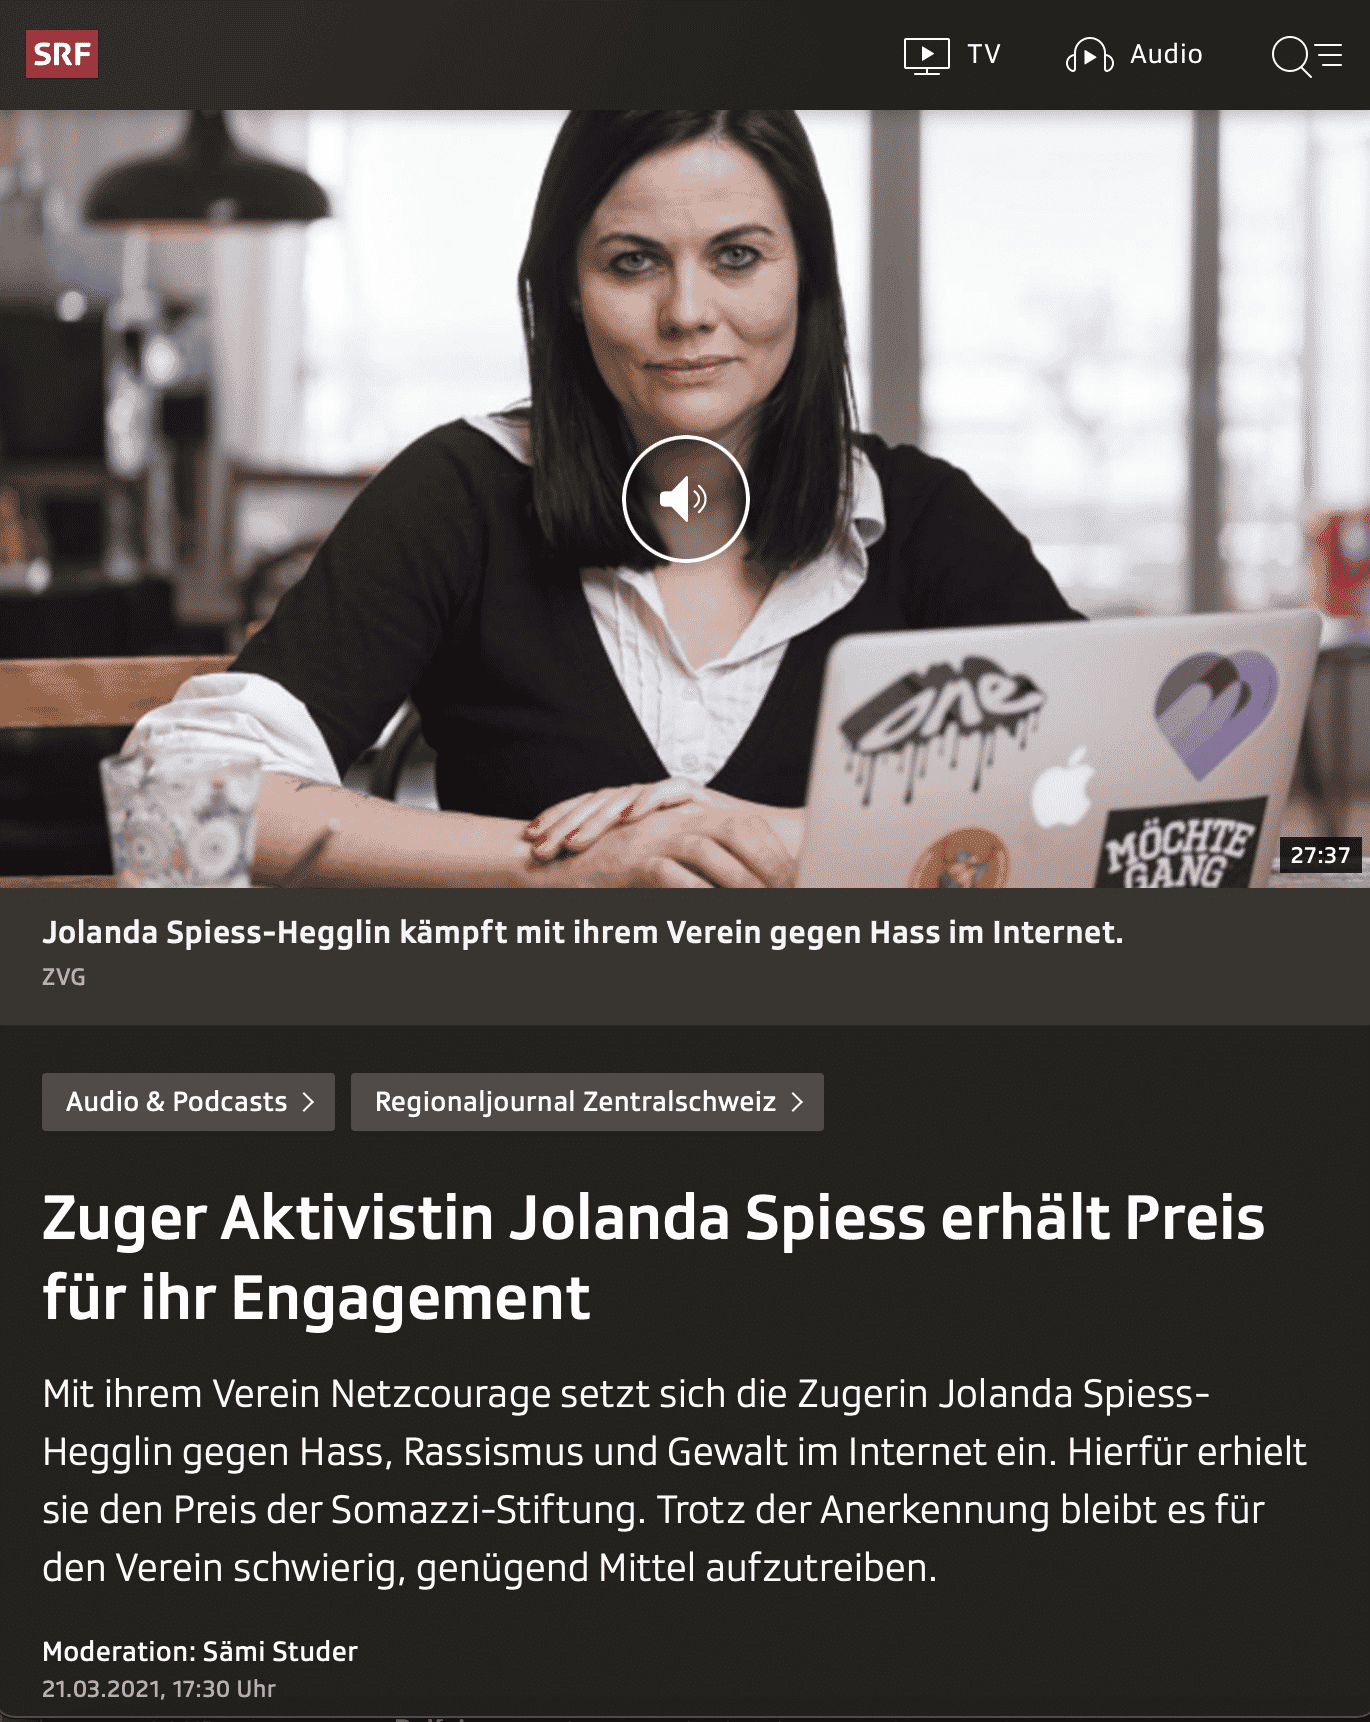 Zuger Aktivistin Jolanda Spiess erhält Preis für ihr Engagement